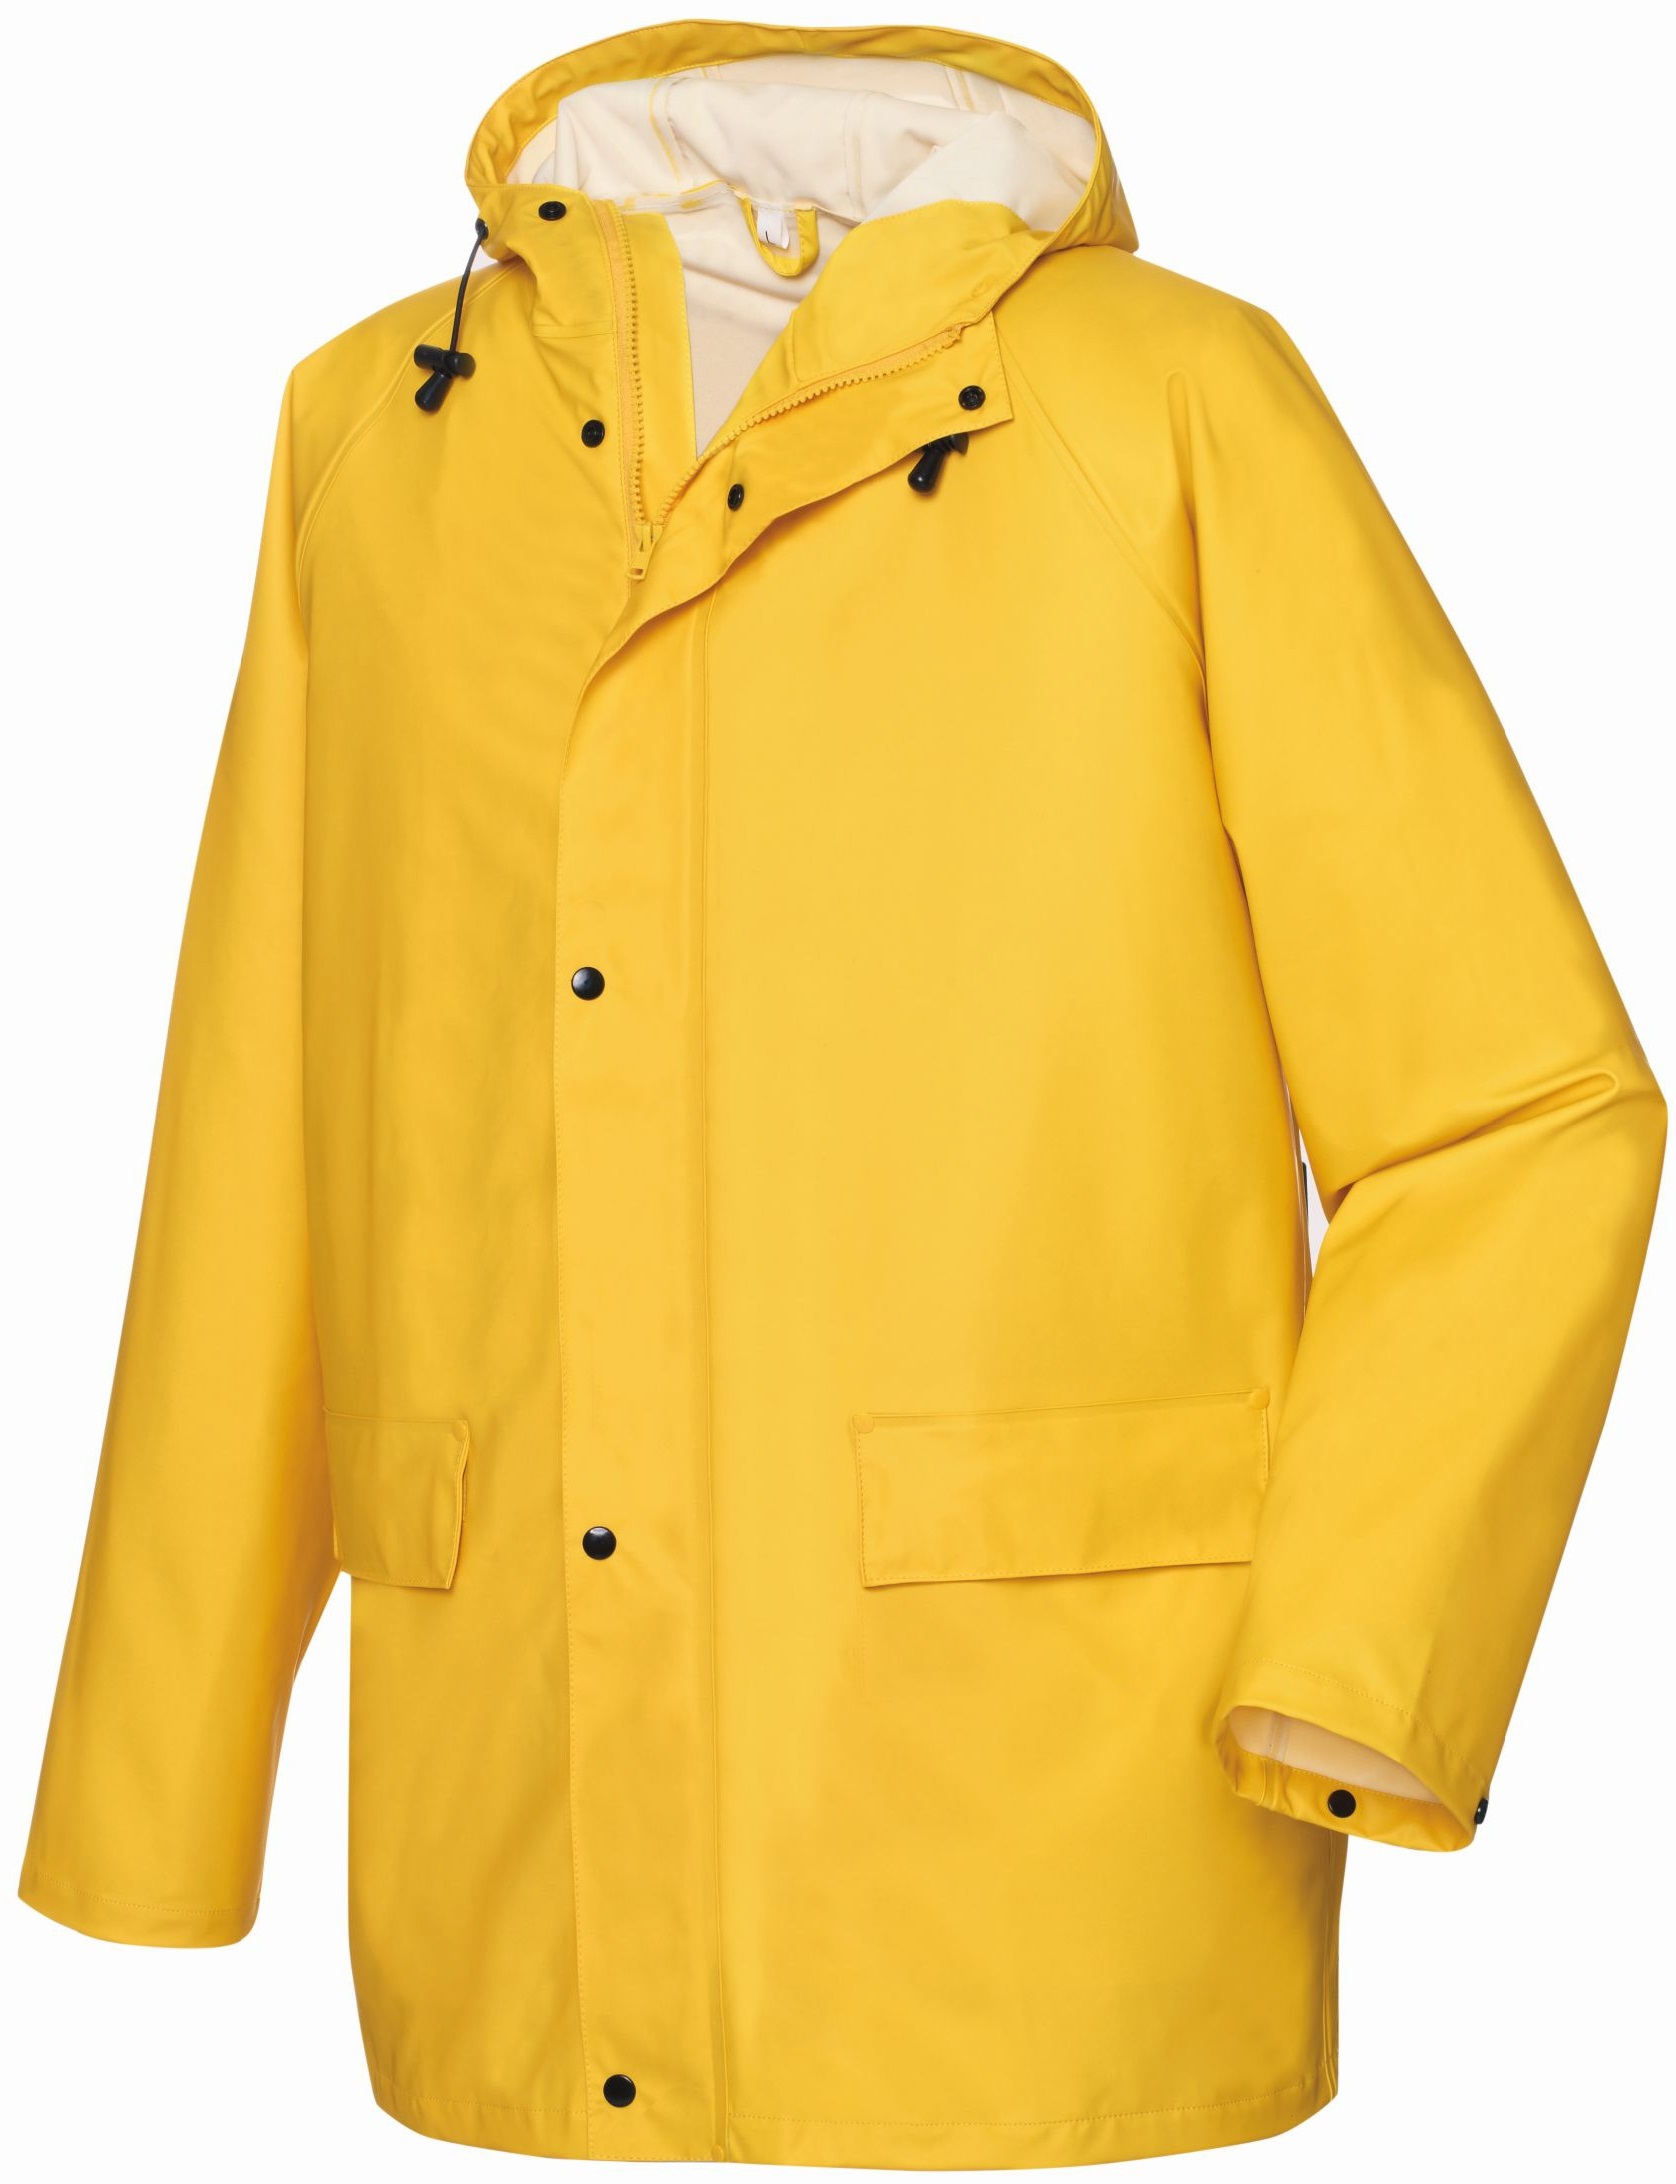 BIG-TEXXOR-Regenschutz, Regen-Jacke, Nässe-Wetter-Schutz, List, ca. 190g/m², gelb